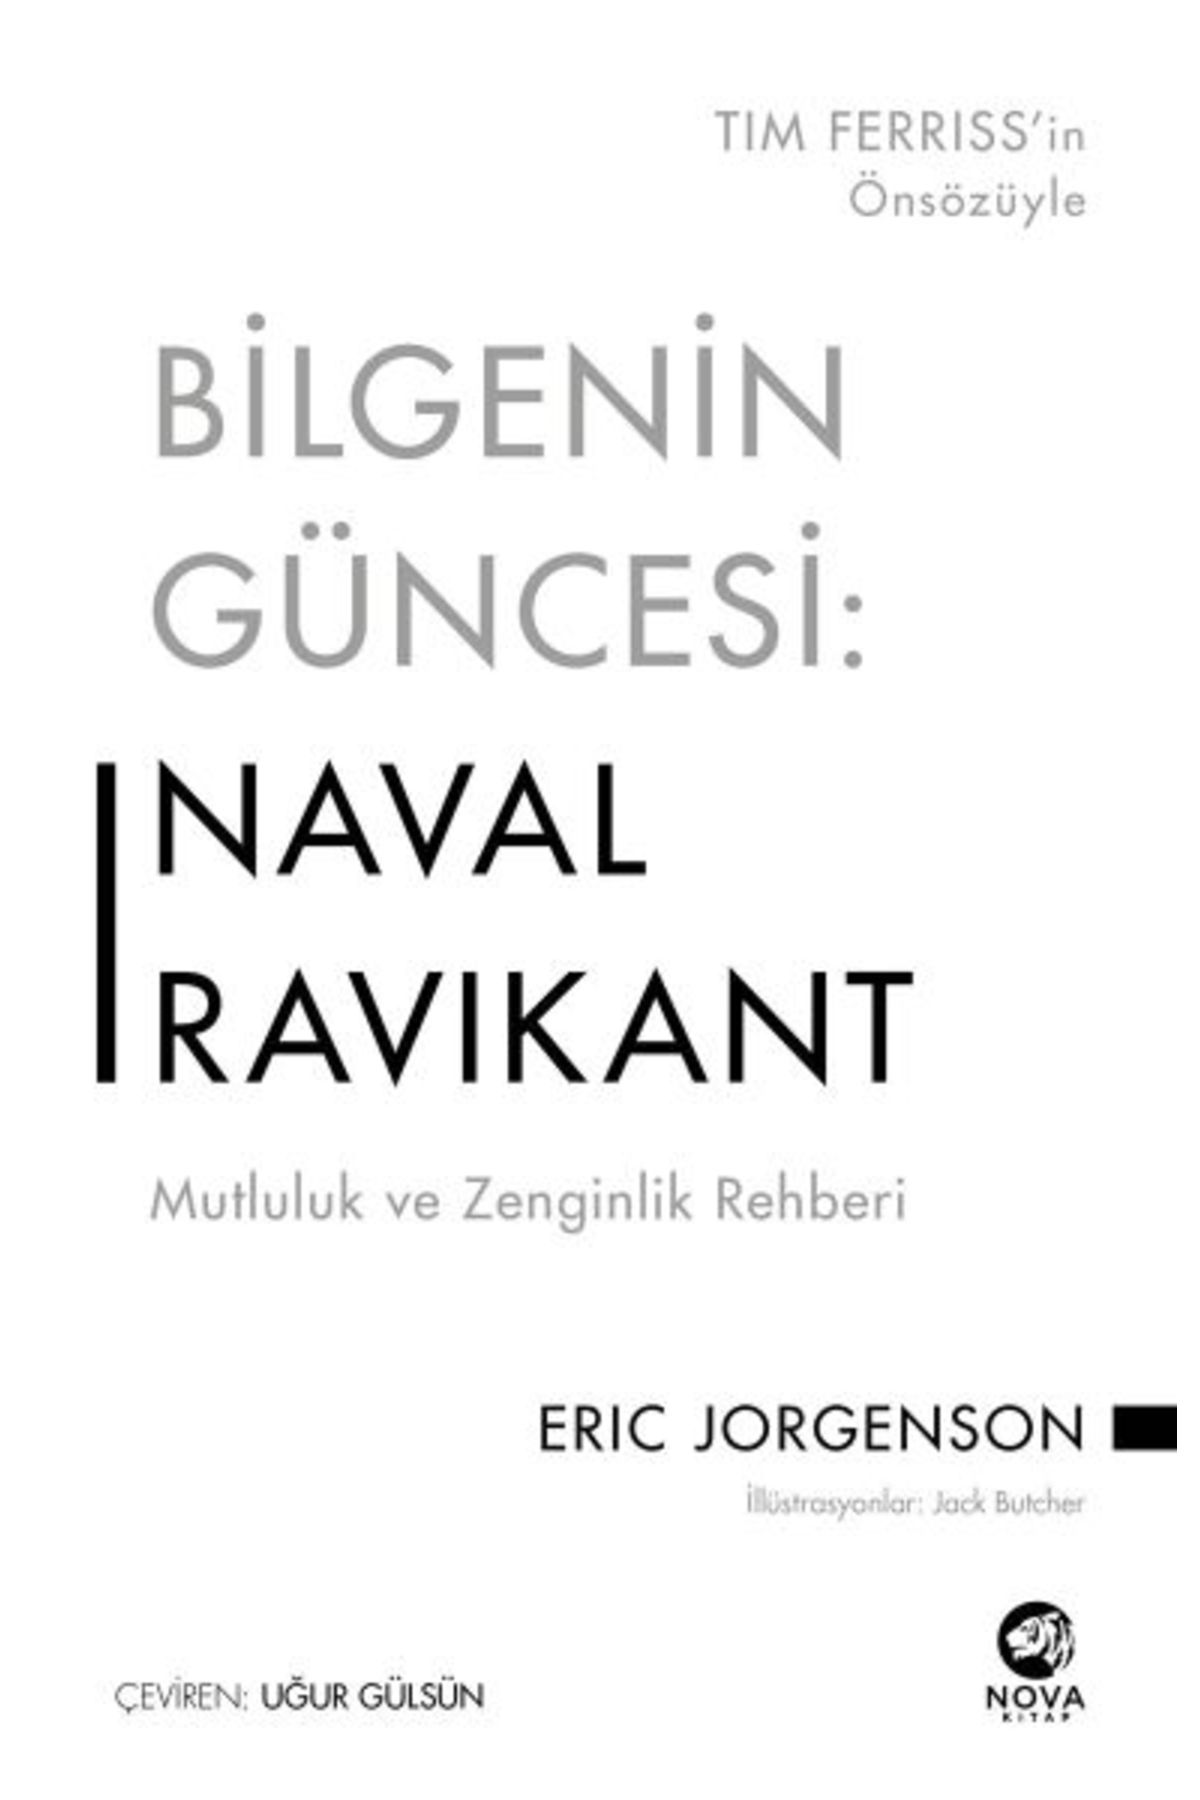 nova kitap Bilgenin Güncesi: Naval Ravikant-cevşen-i Kebir Hediyeli